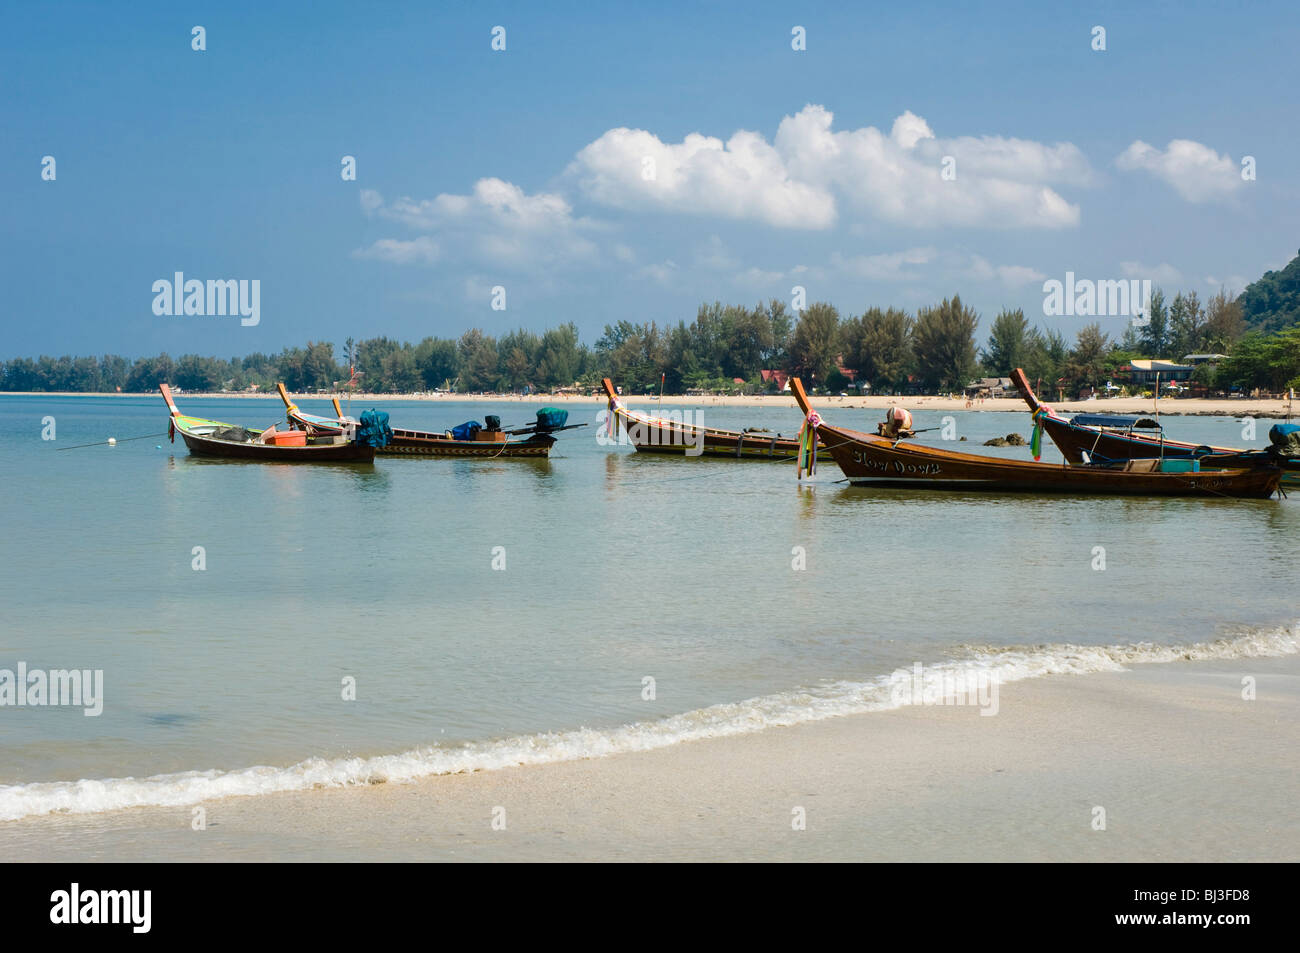 Long tail boats, fishing boats on the beach, Klong Dao Beach, island of Ko Lanta, Koh Lanta, Krabi, Thailand, Asia Stock Photo